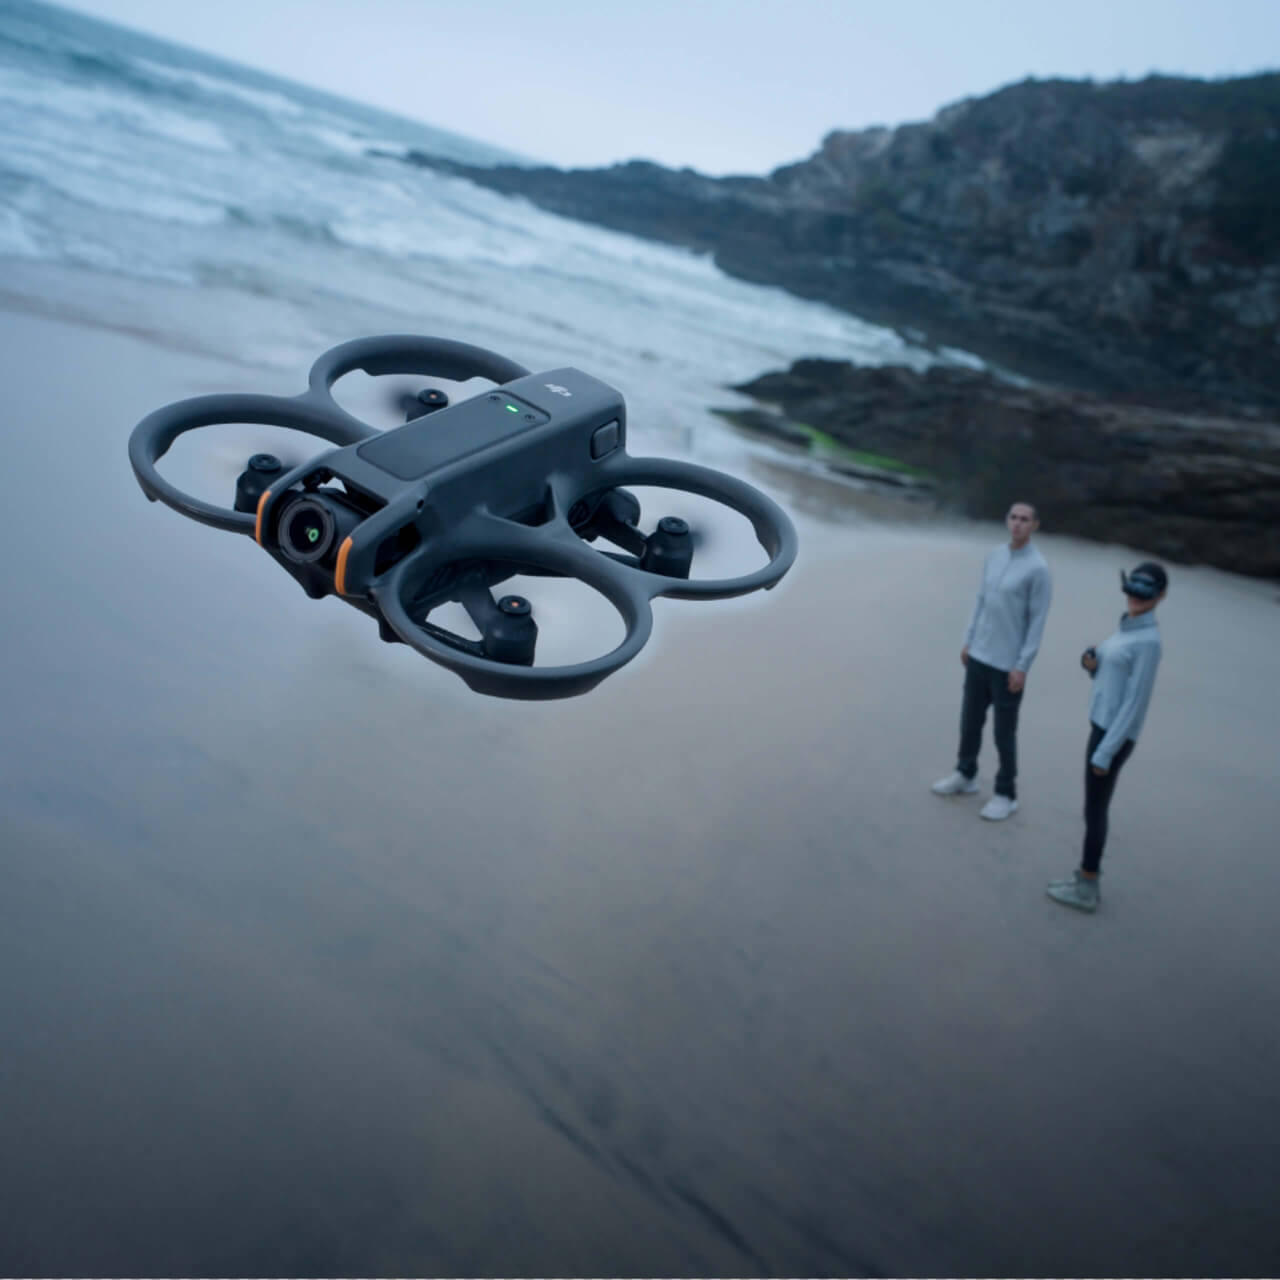 Avata drone plus immersif marché